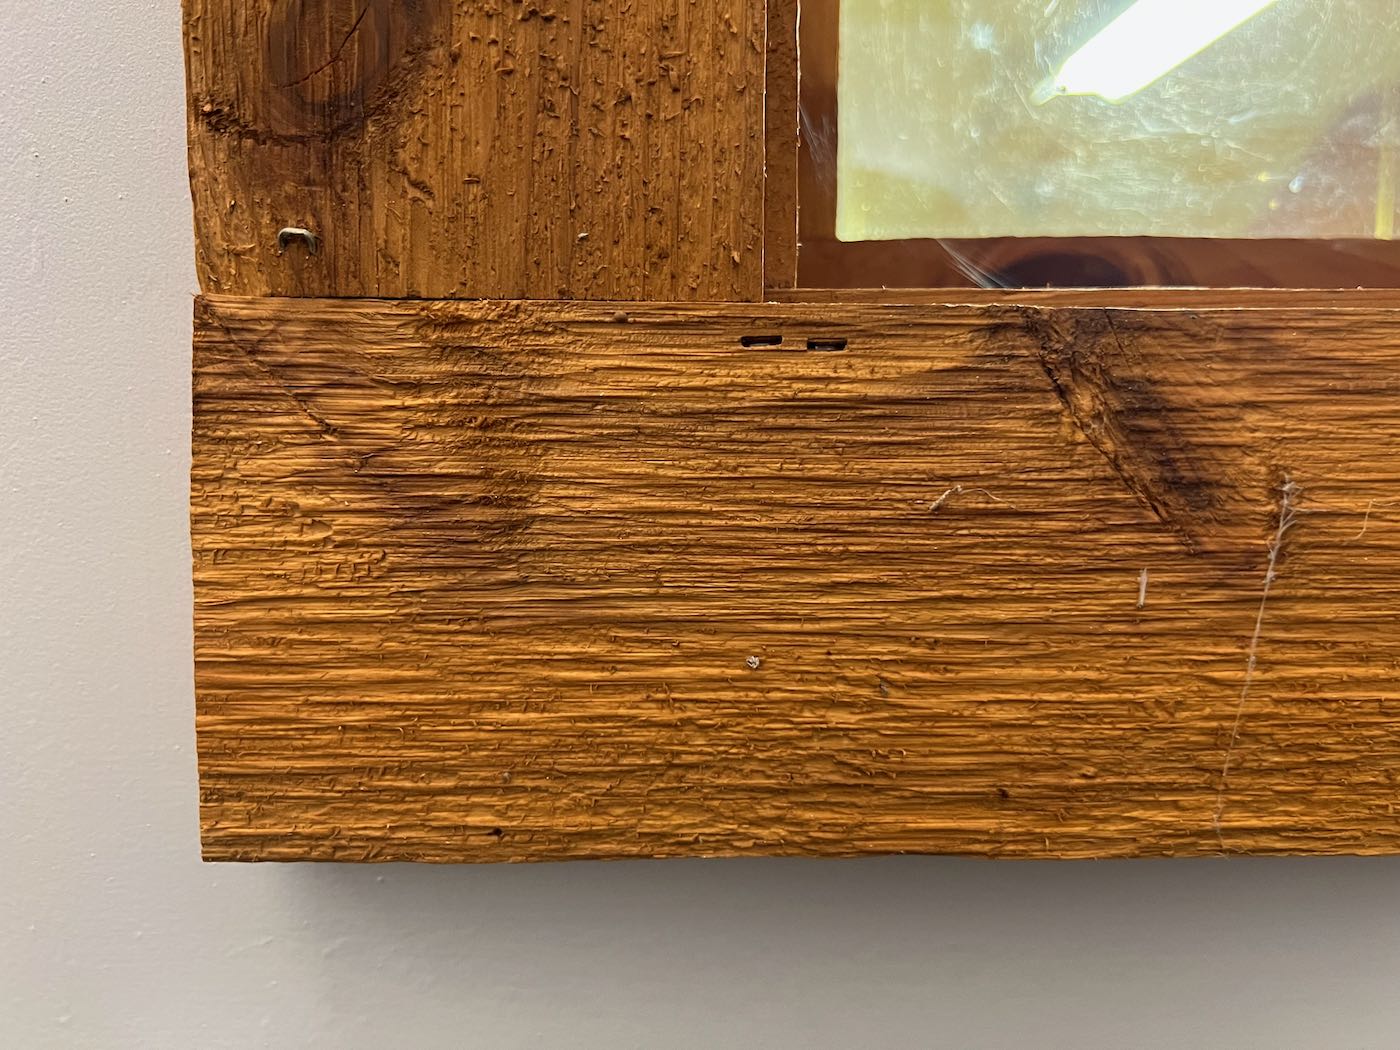 Rough cedar - natural tone stain